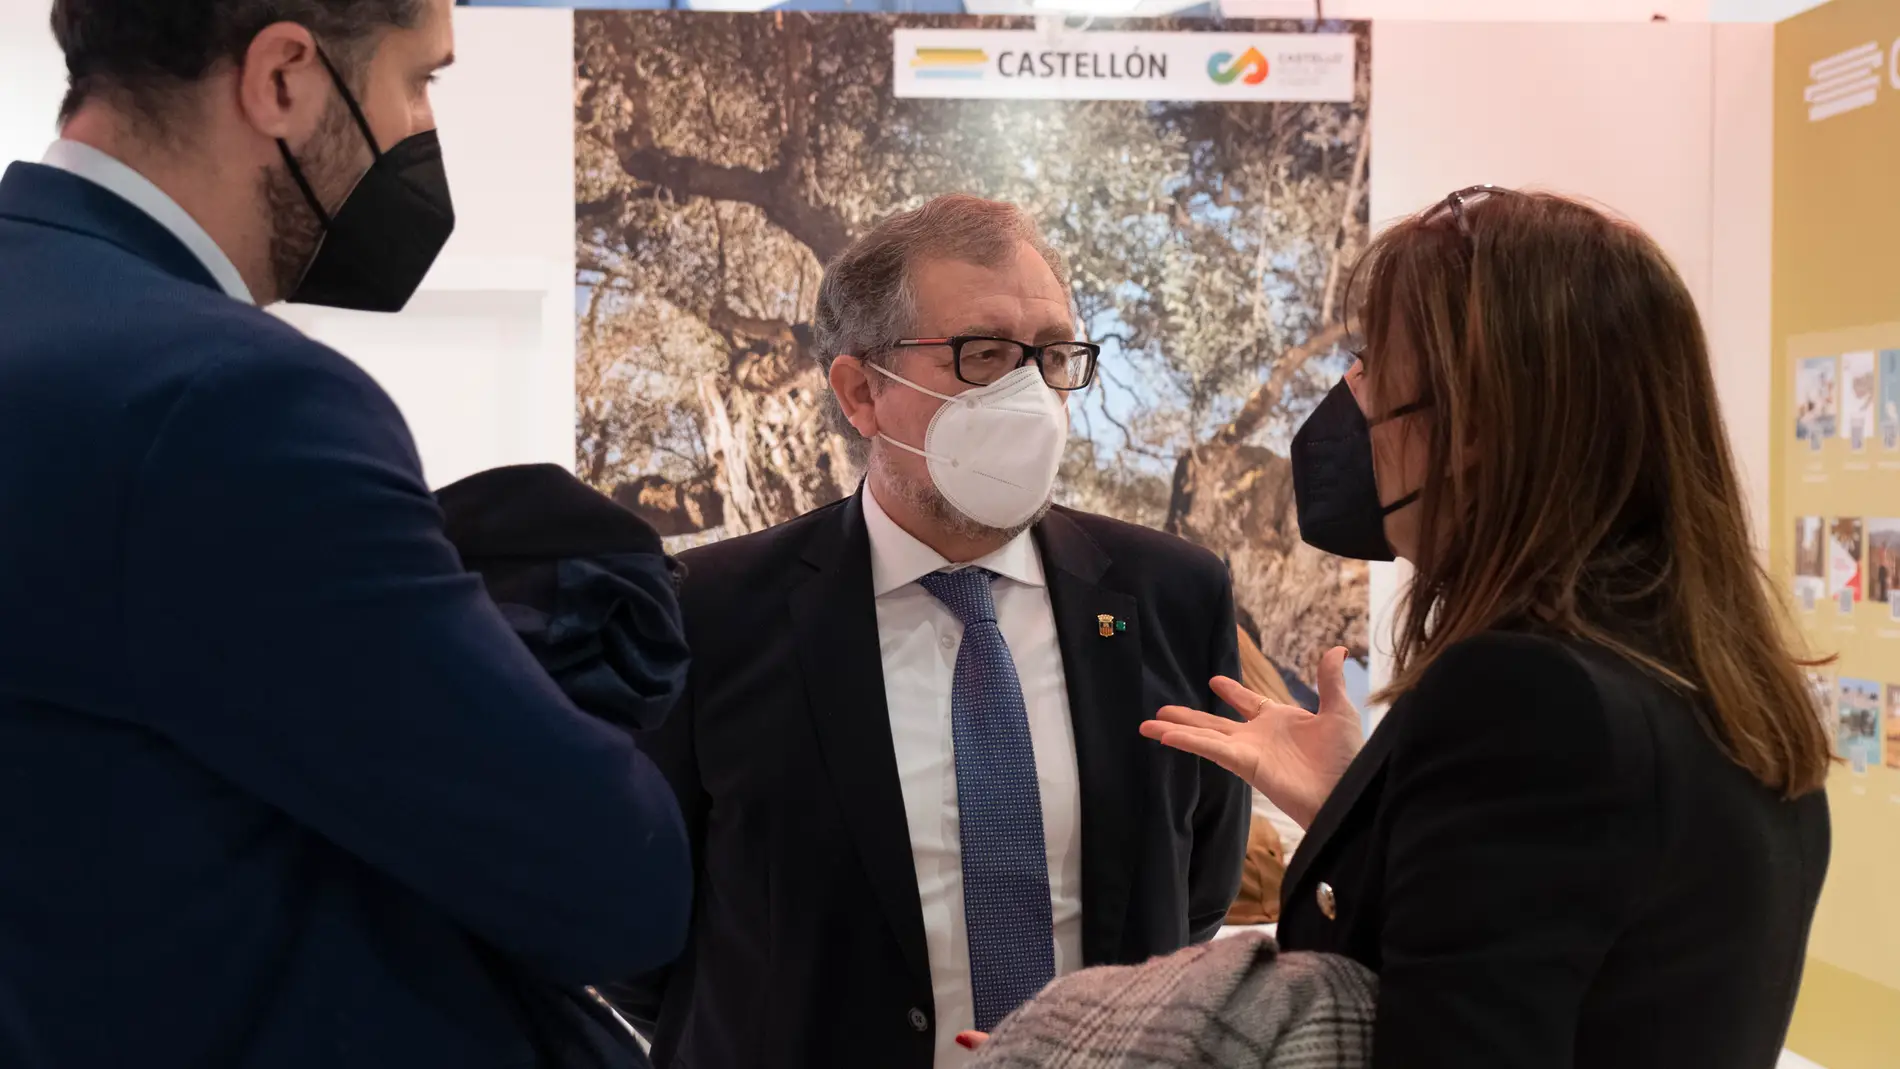 La Diputació de Castelló mostrará los atractivos turísticos de la provincia en el centro de Valencia